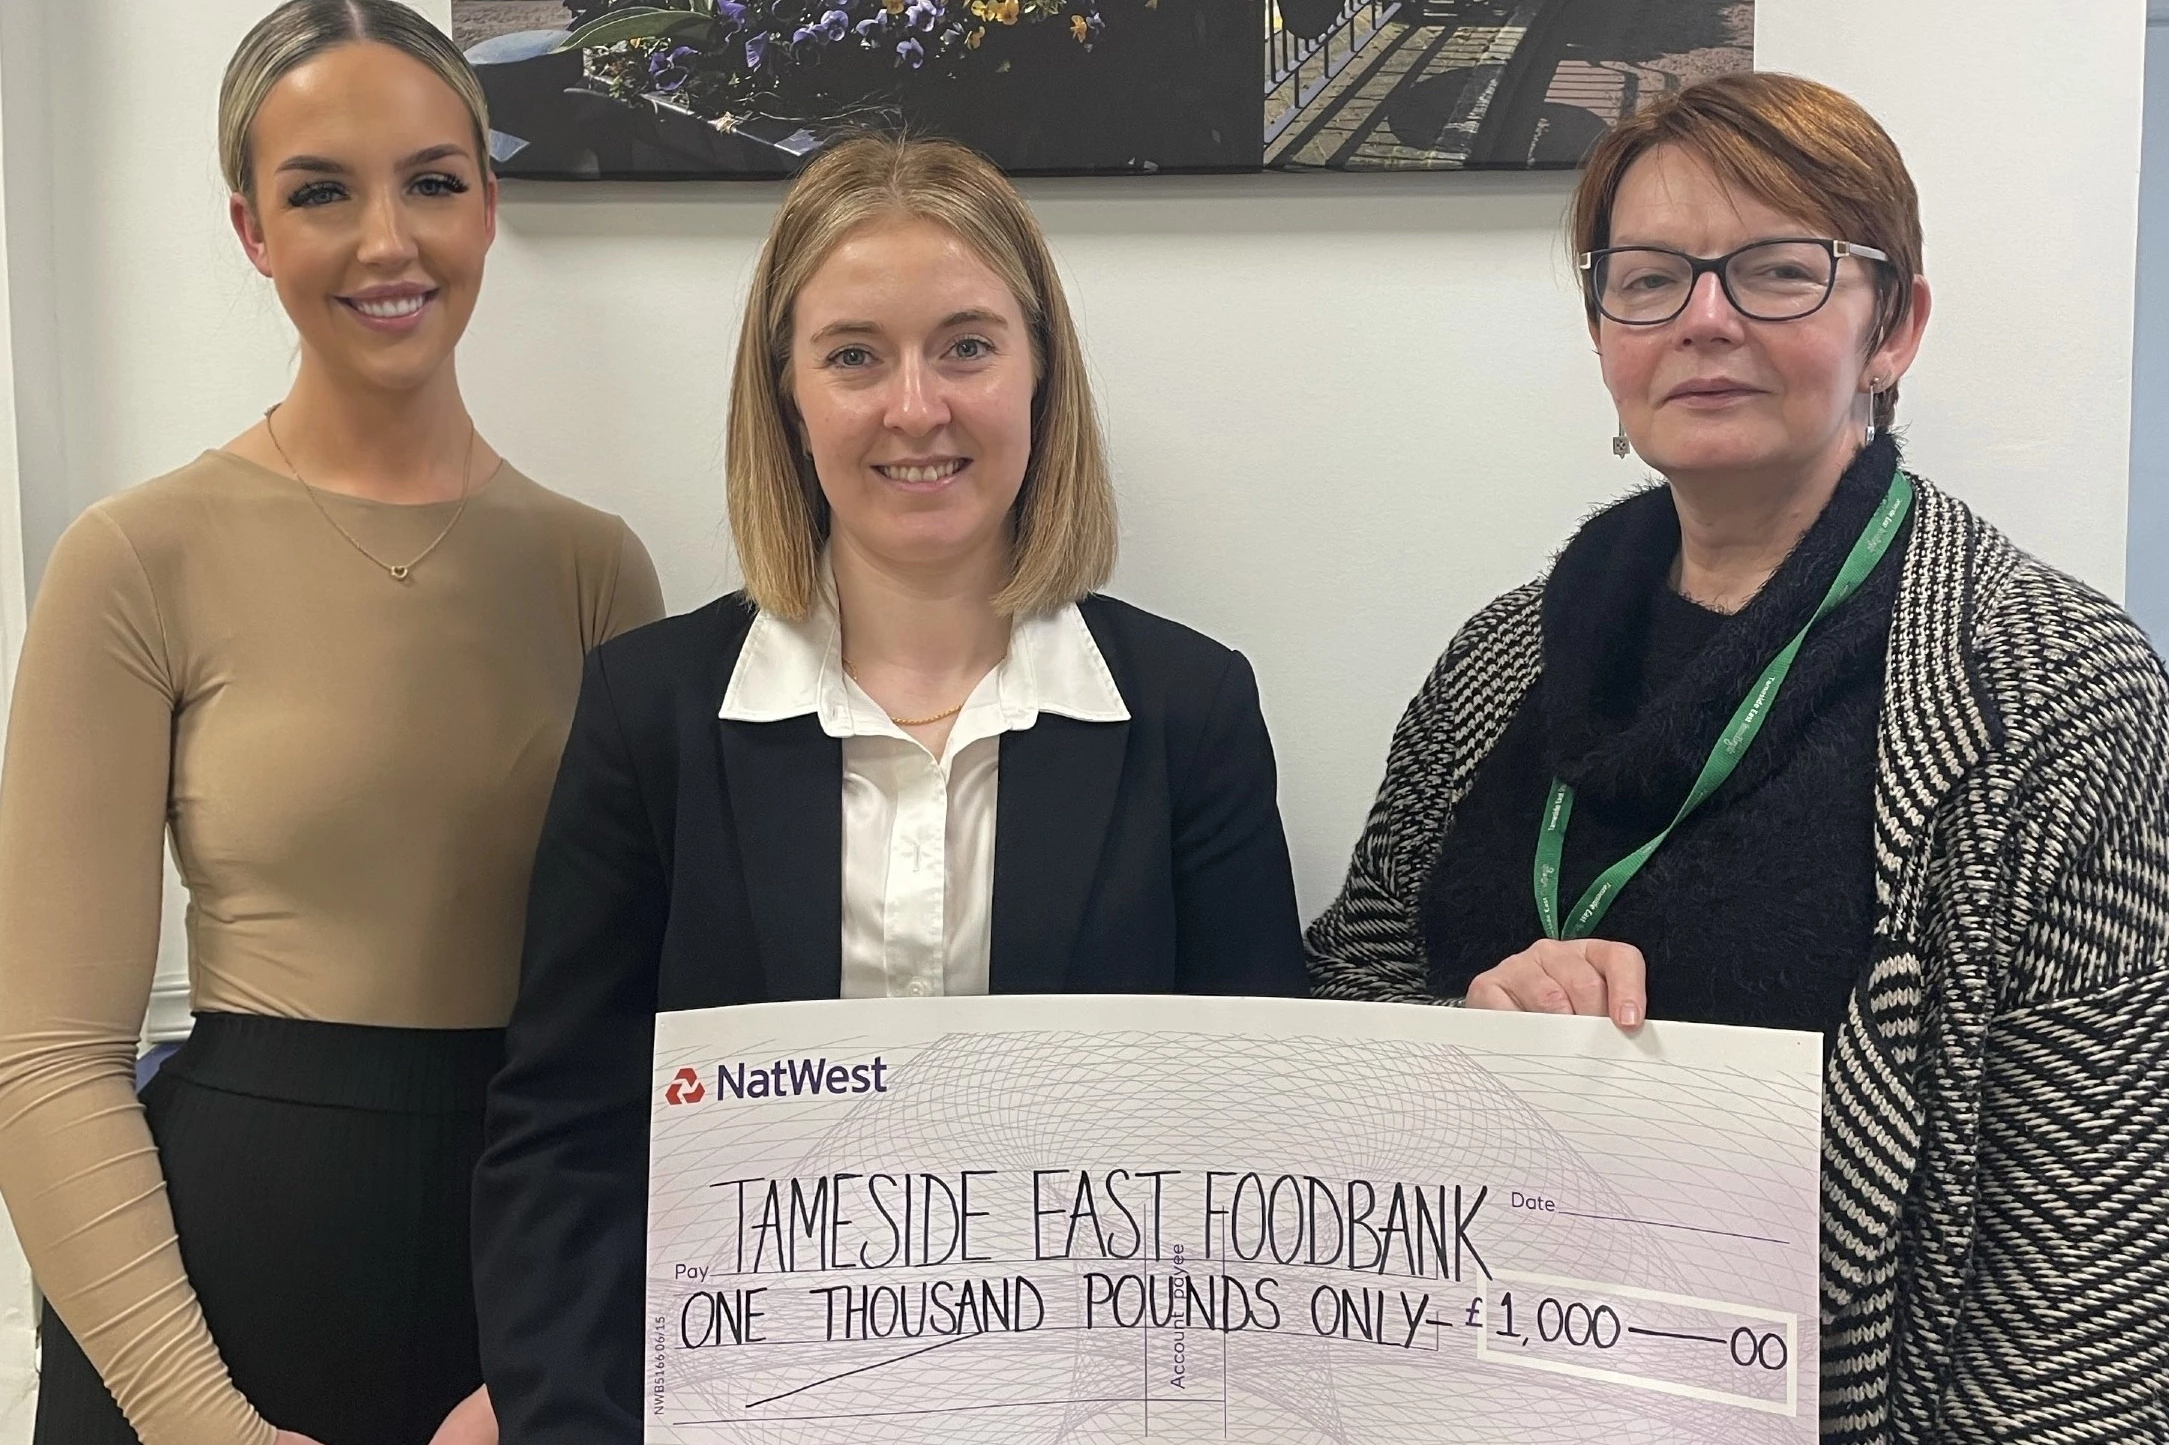 Bromleys raises £1,000 for food bank